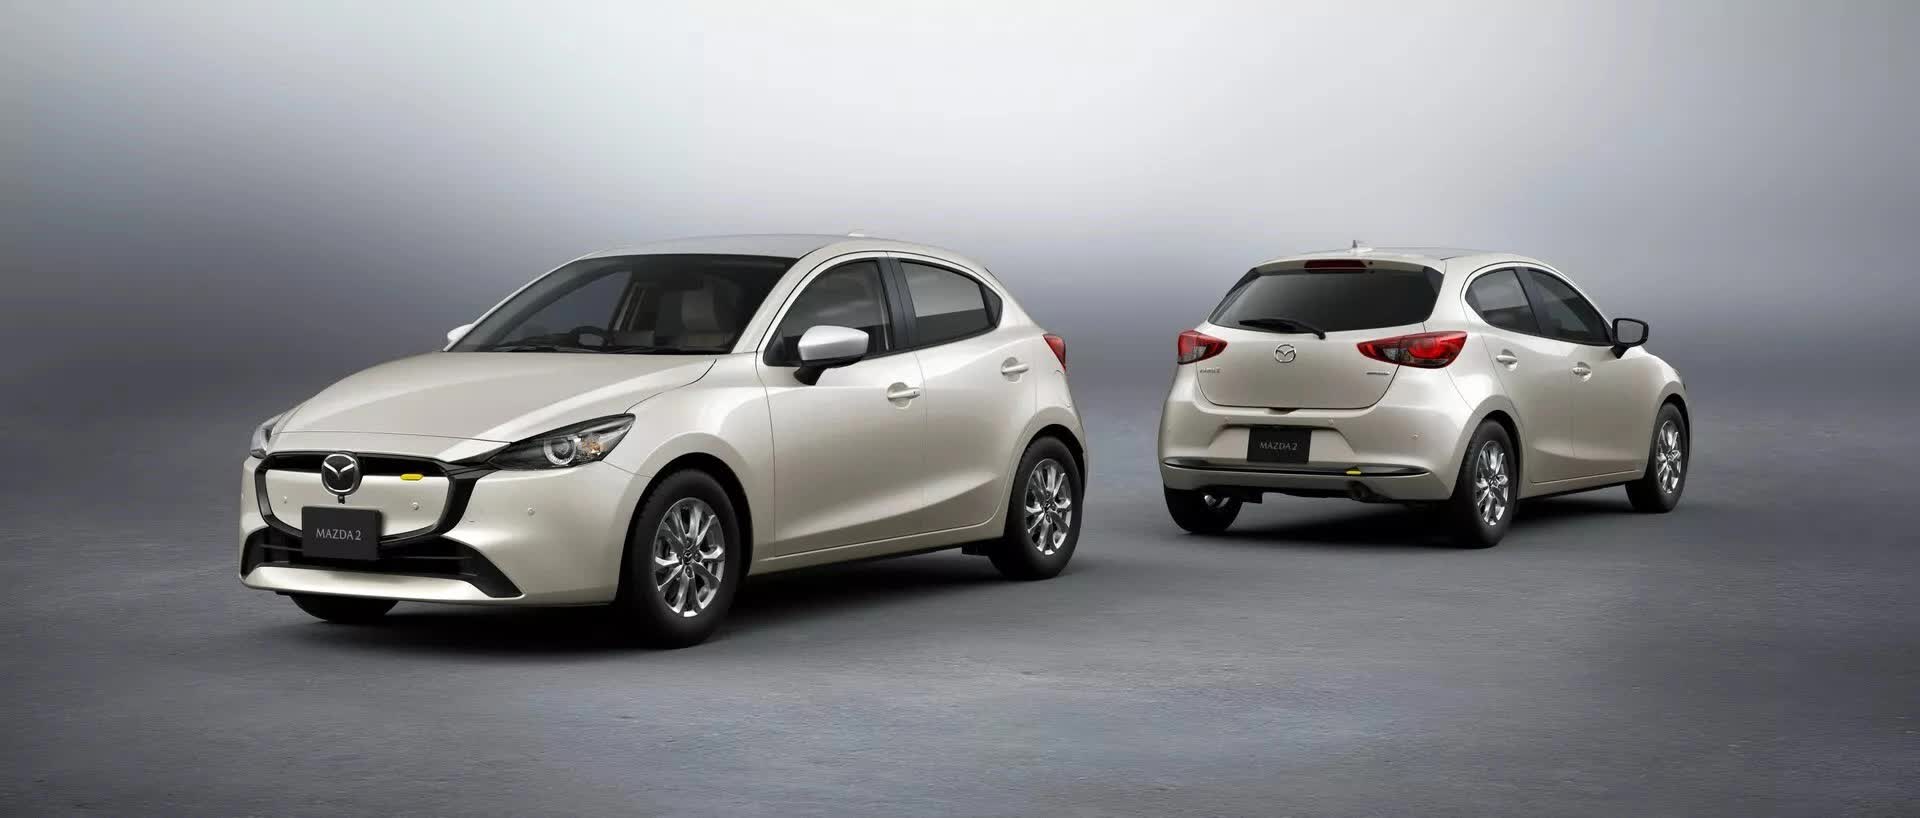 Mazda2 chính thức được facelift nhẹ nhàng - Ảnh 2.